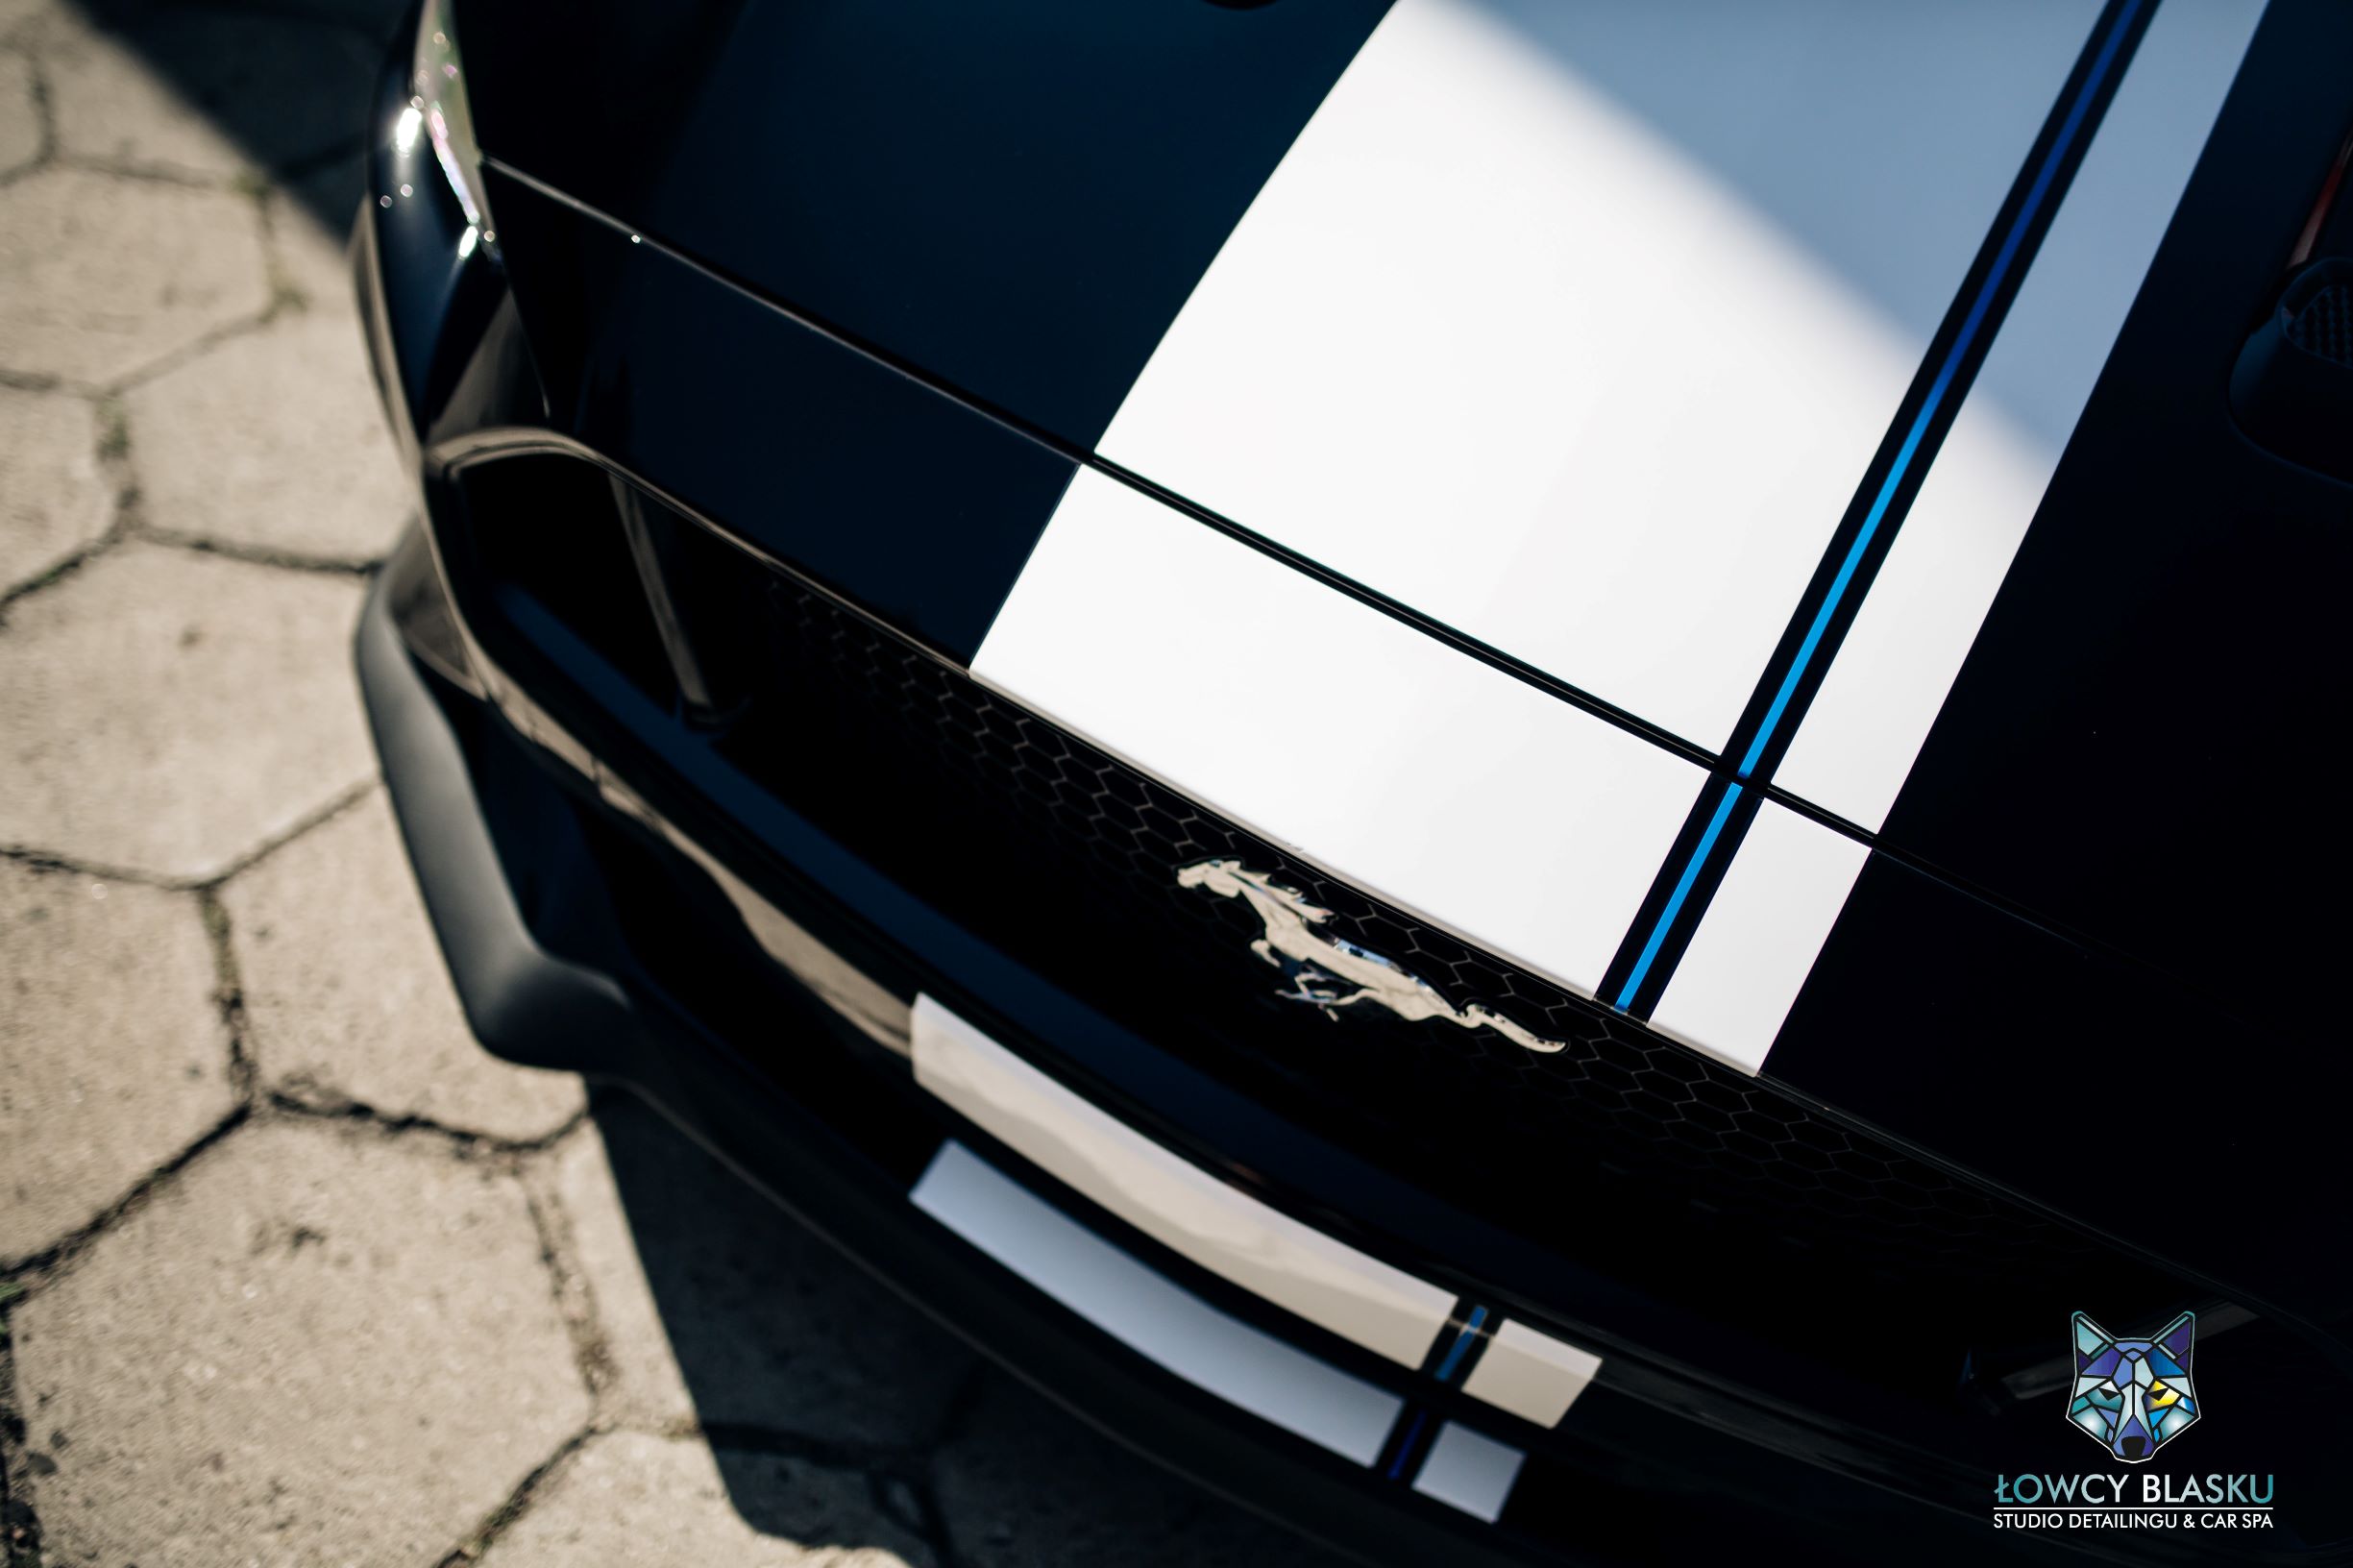 Ford Mustang GT zabezpieczony folią ochronną samochodową, folie samochodowe, oklejanie foliami, łowcy blasku